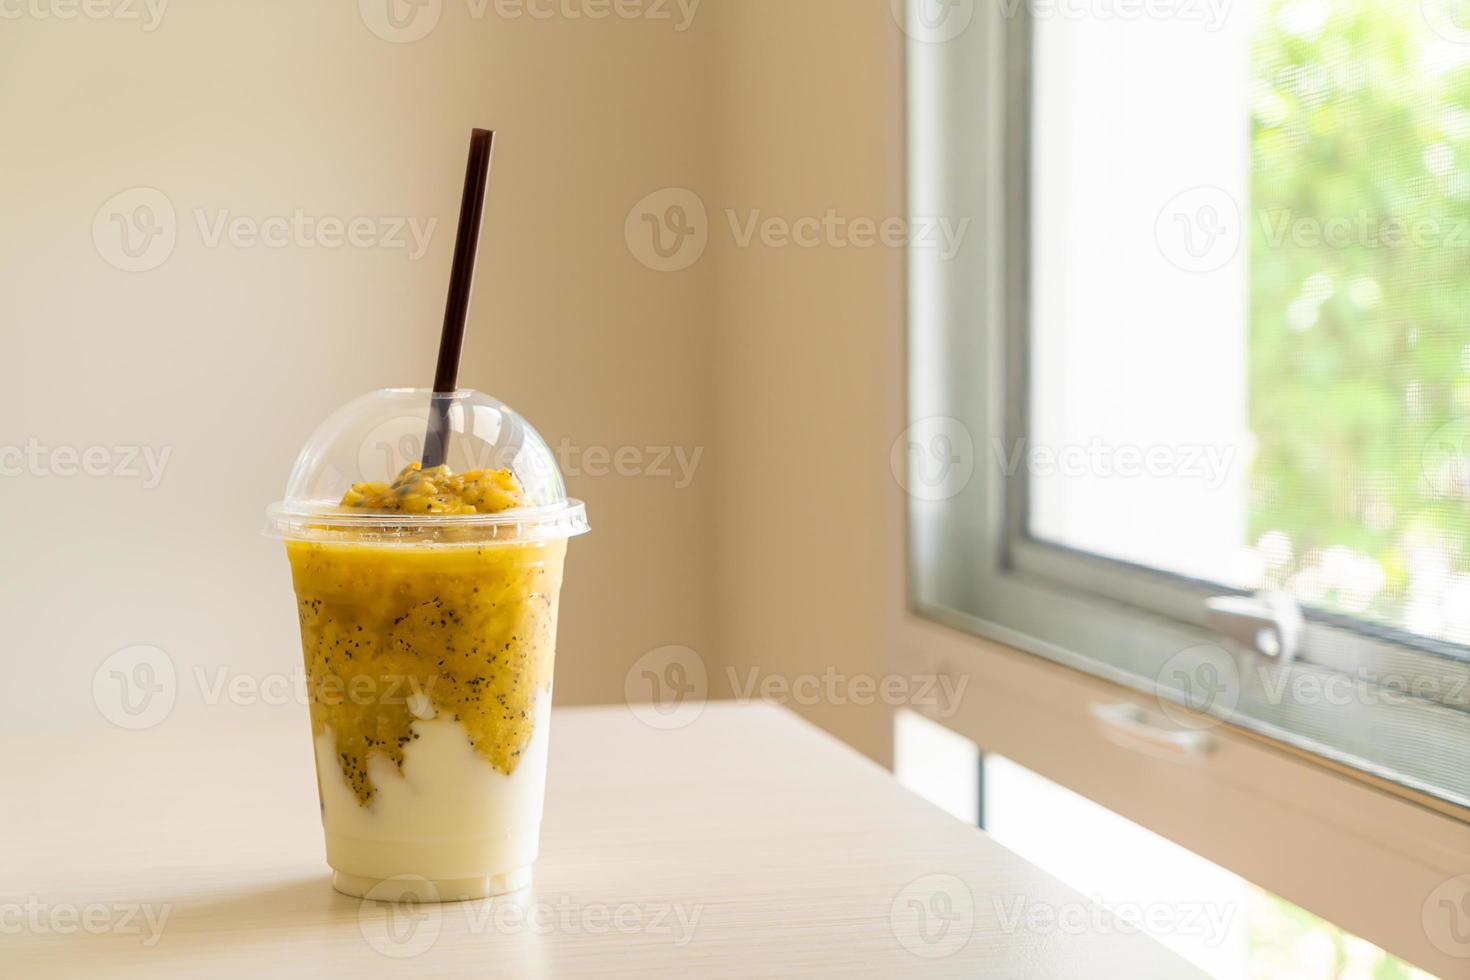 färska passionfruktsmoothies med yoghurt i glas foto